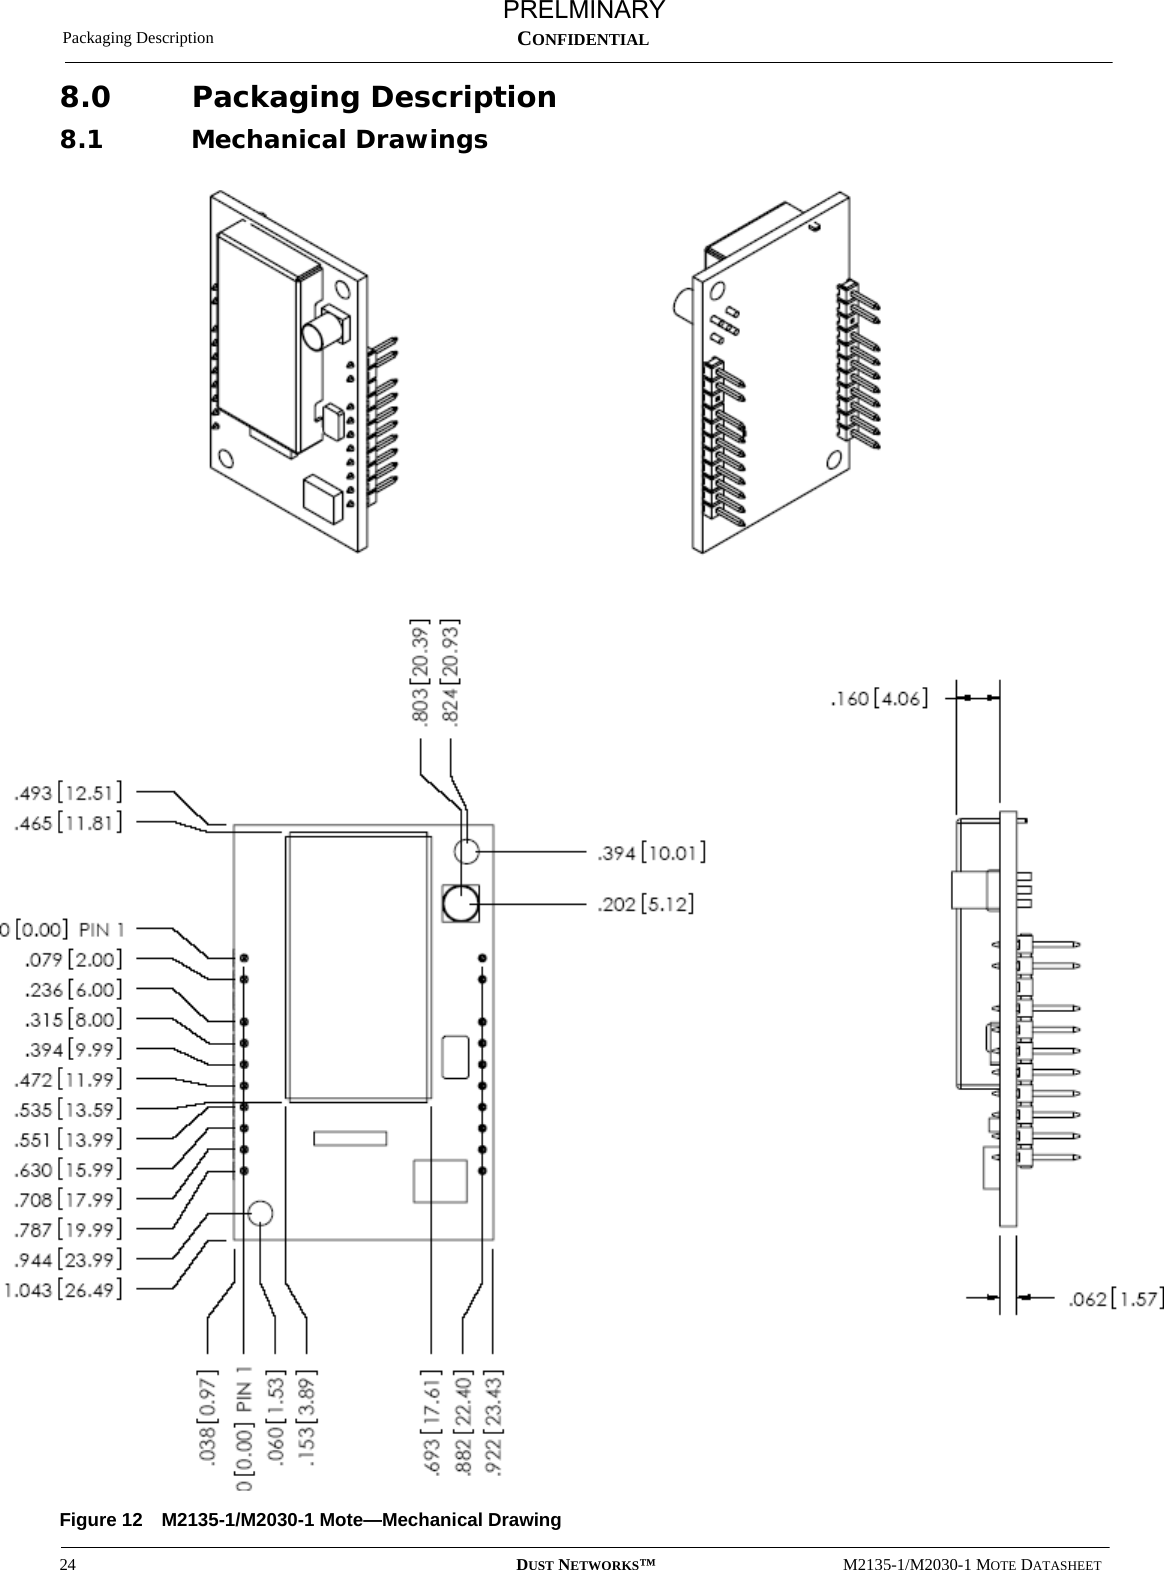 Packaging Description24 DUST NETWORKS™M2135-1/M2030-1 MOTE DATASHEETCONFIDENTIAL8.0 Packaging Description8.1 Mechanical DrawingsFigure 12 M2135-1/M2030-1 Mote—Mechanical DrawingPRELMINARY